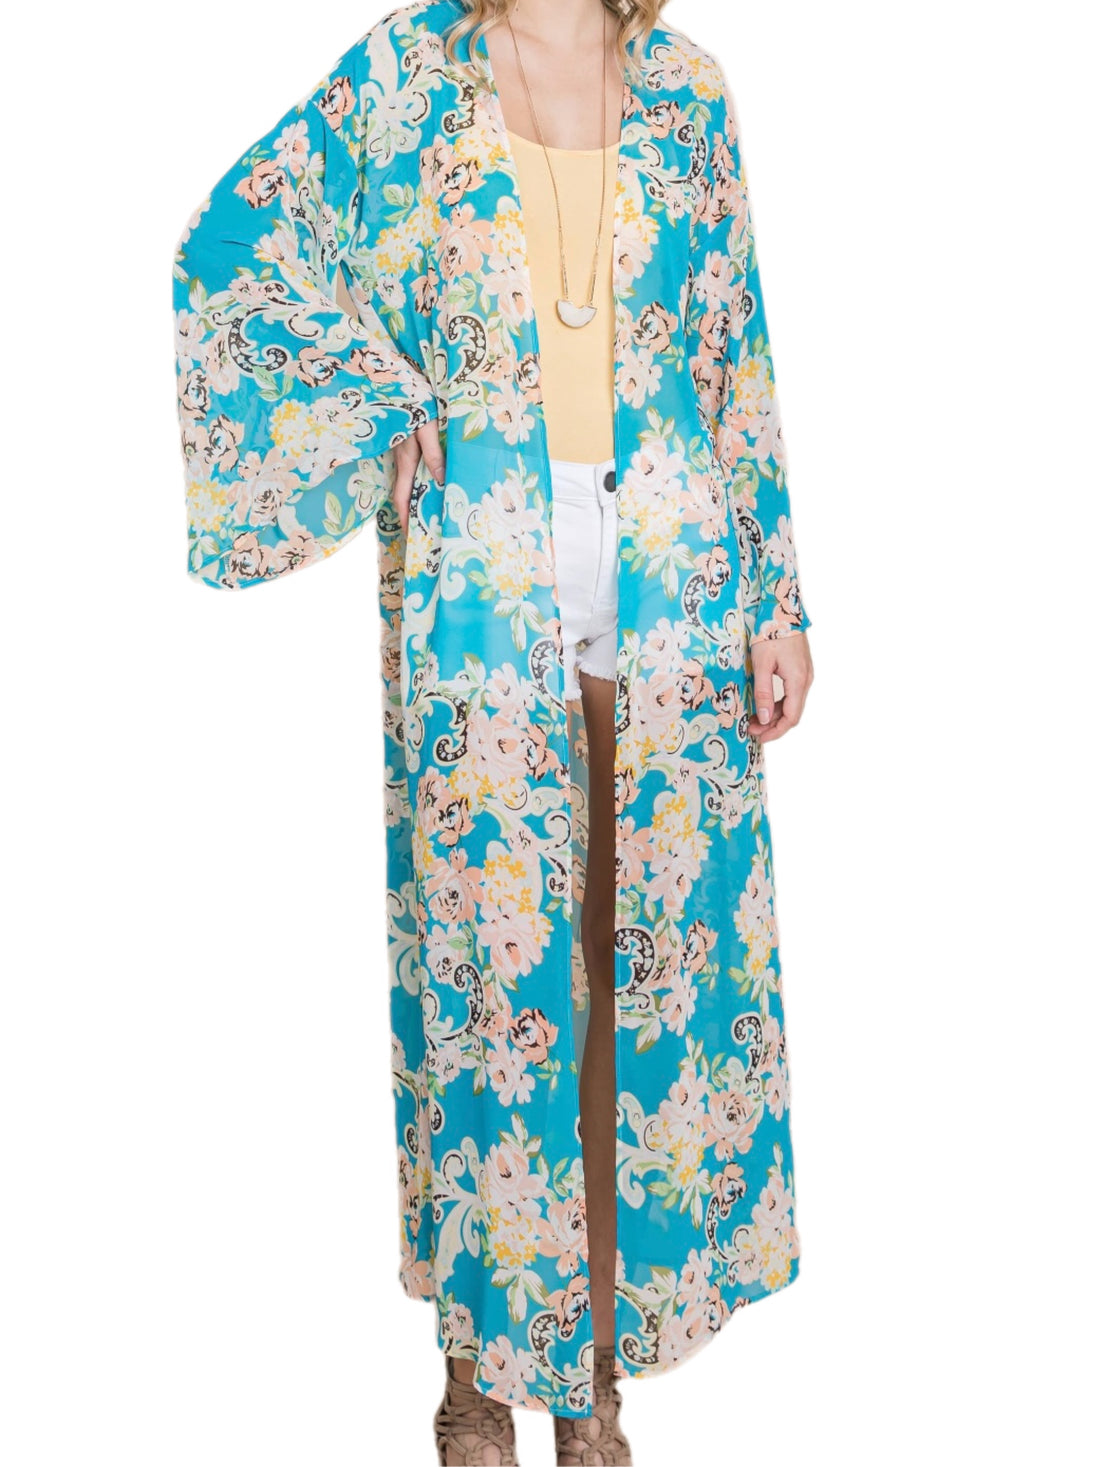 Long Blue Floral Kimono